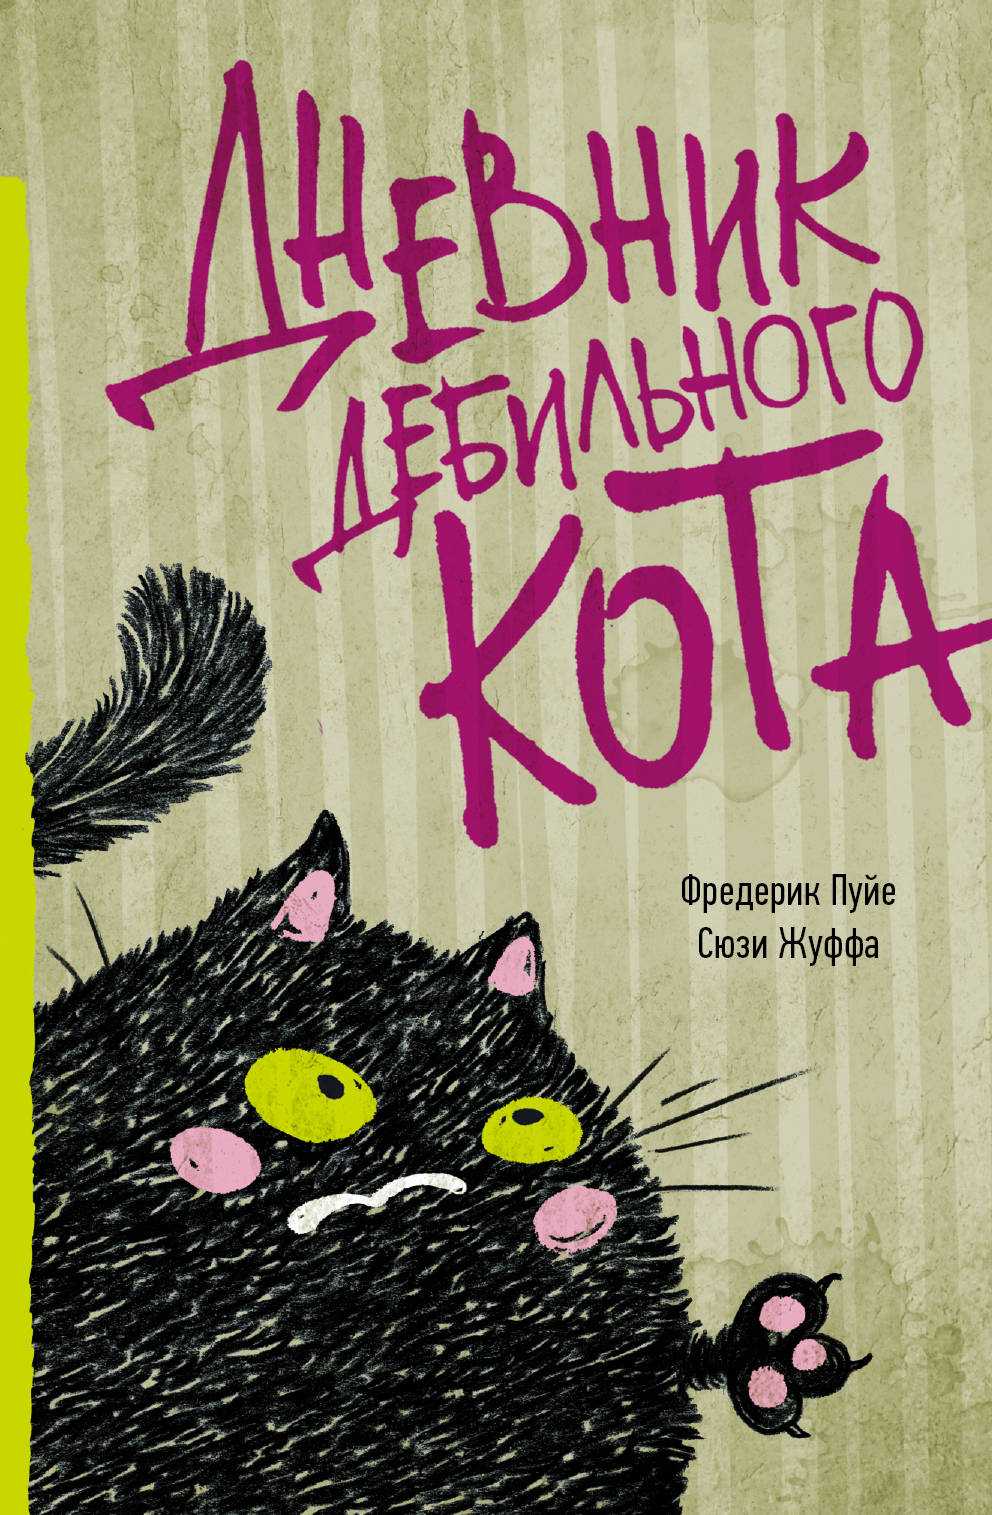 Книжки про котов и собак, которые нравятся детям и взрослым